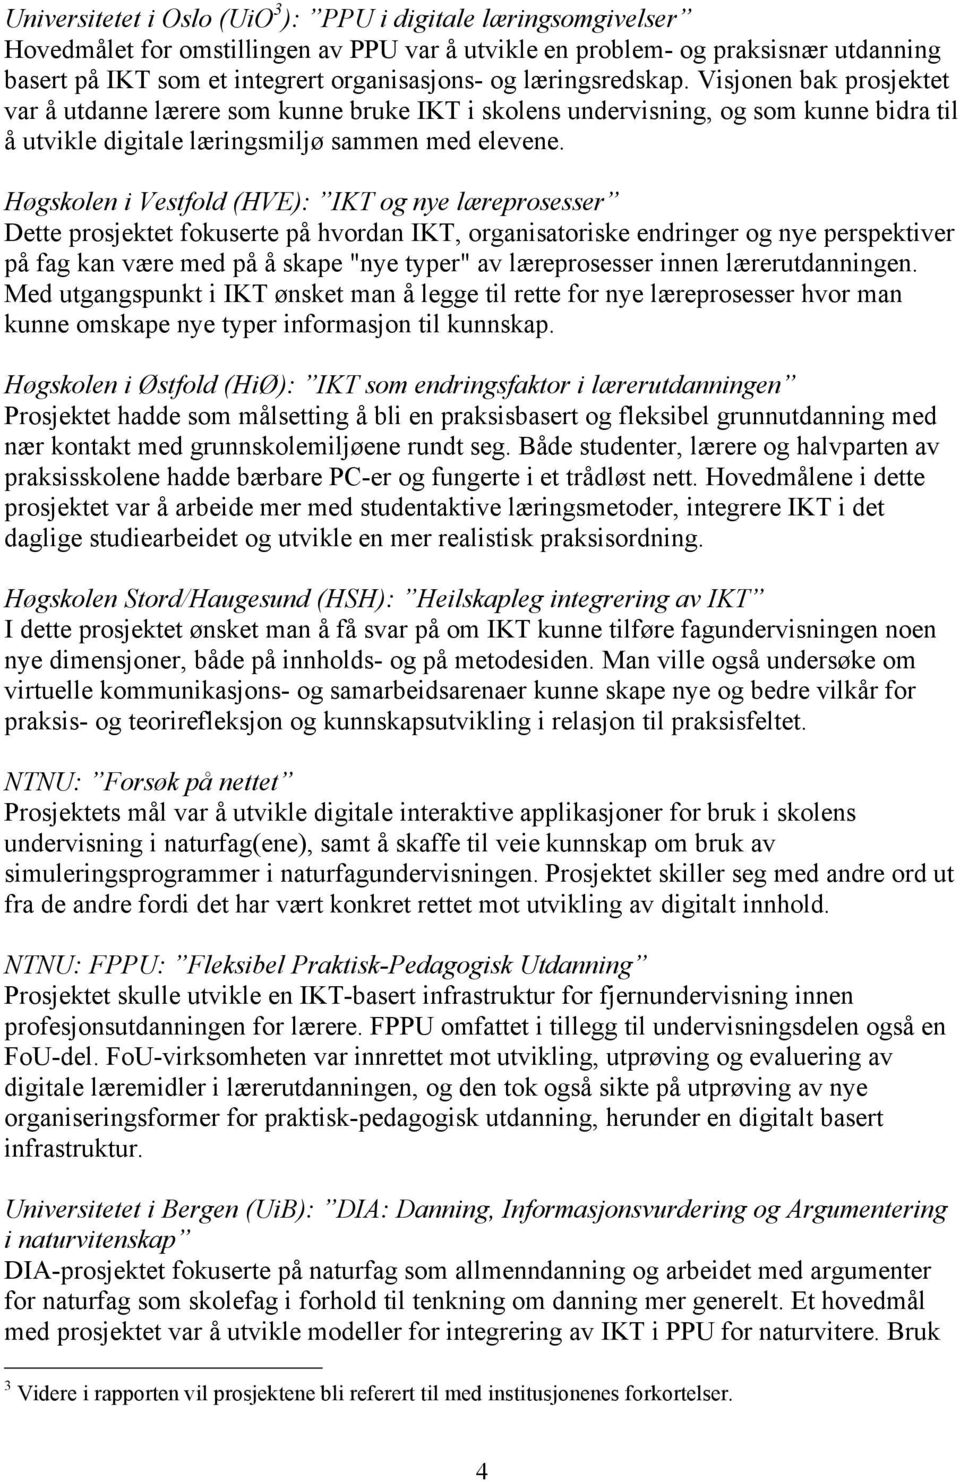 Høgskolen i Vestfold (HVE): IKT og nye læreprosesser Dette prosjektet fokuserte på hvordan IKT, organisatoriske endringer og nye perspektiver på fag kan være med på å skape "nye typer" av